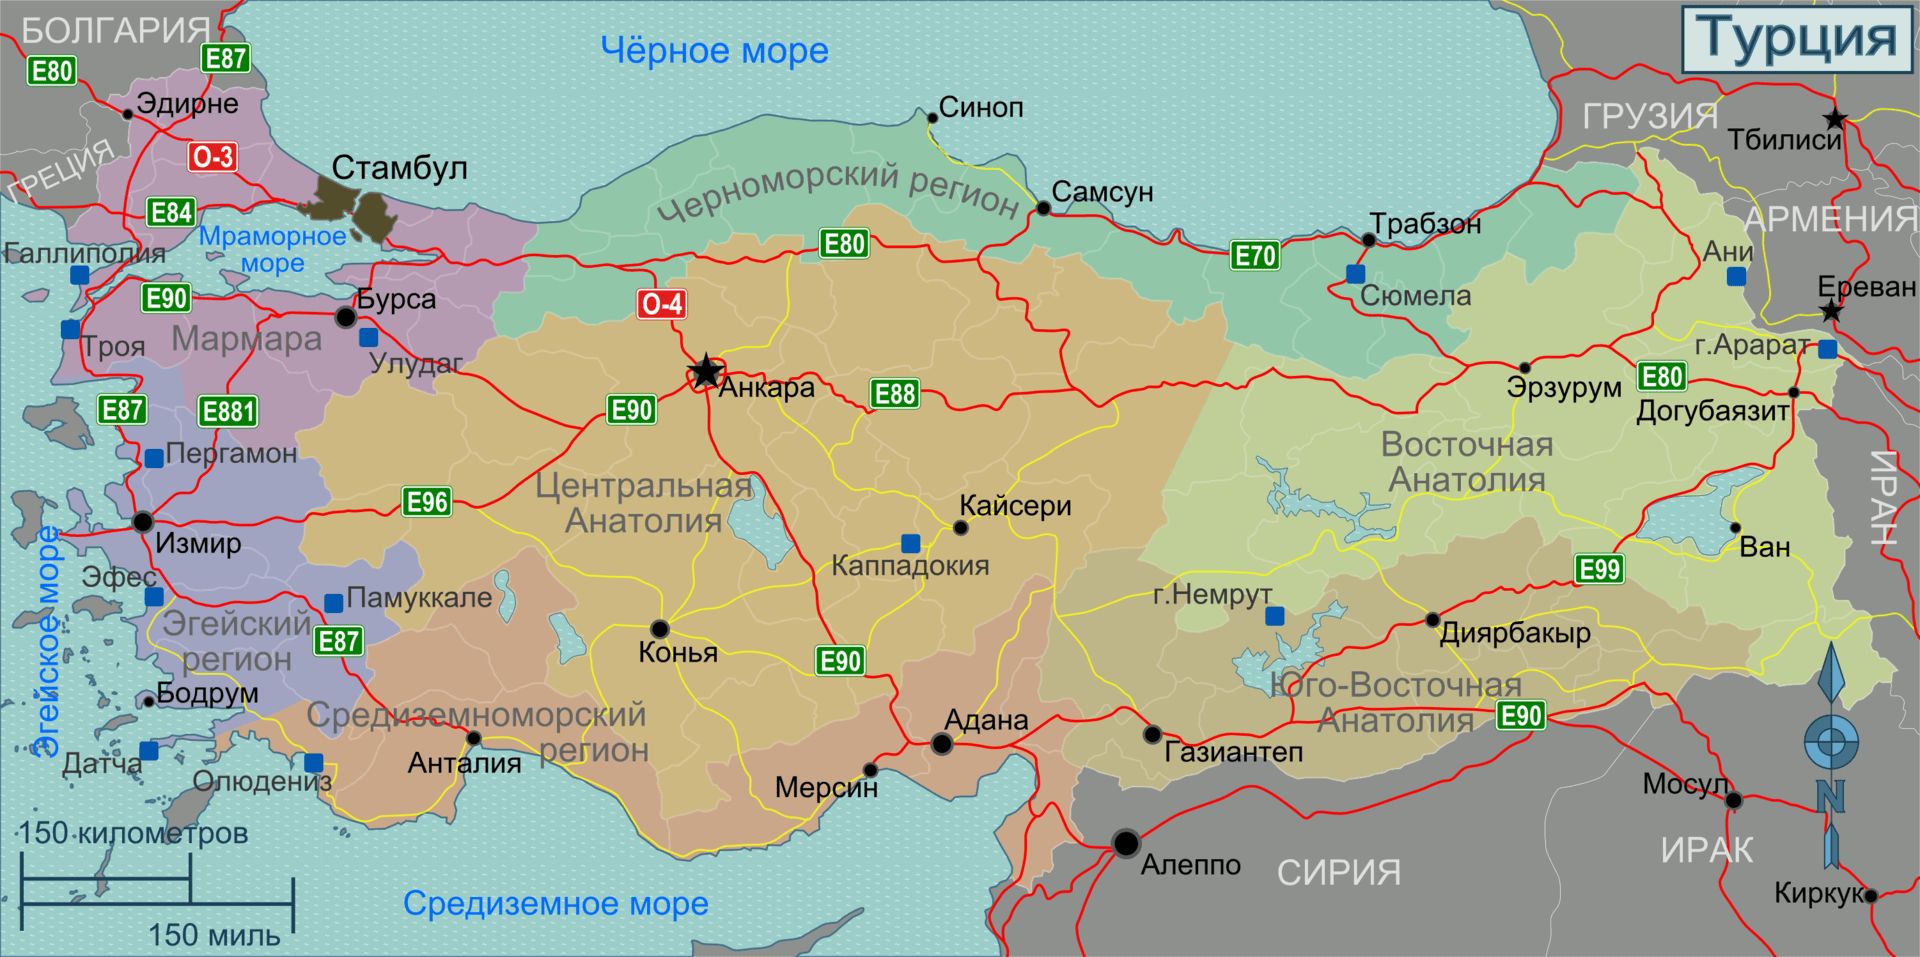 Подробная карта Турции с городами на русском языке